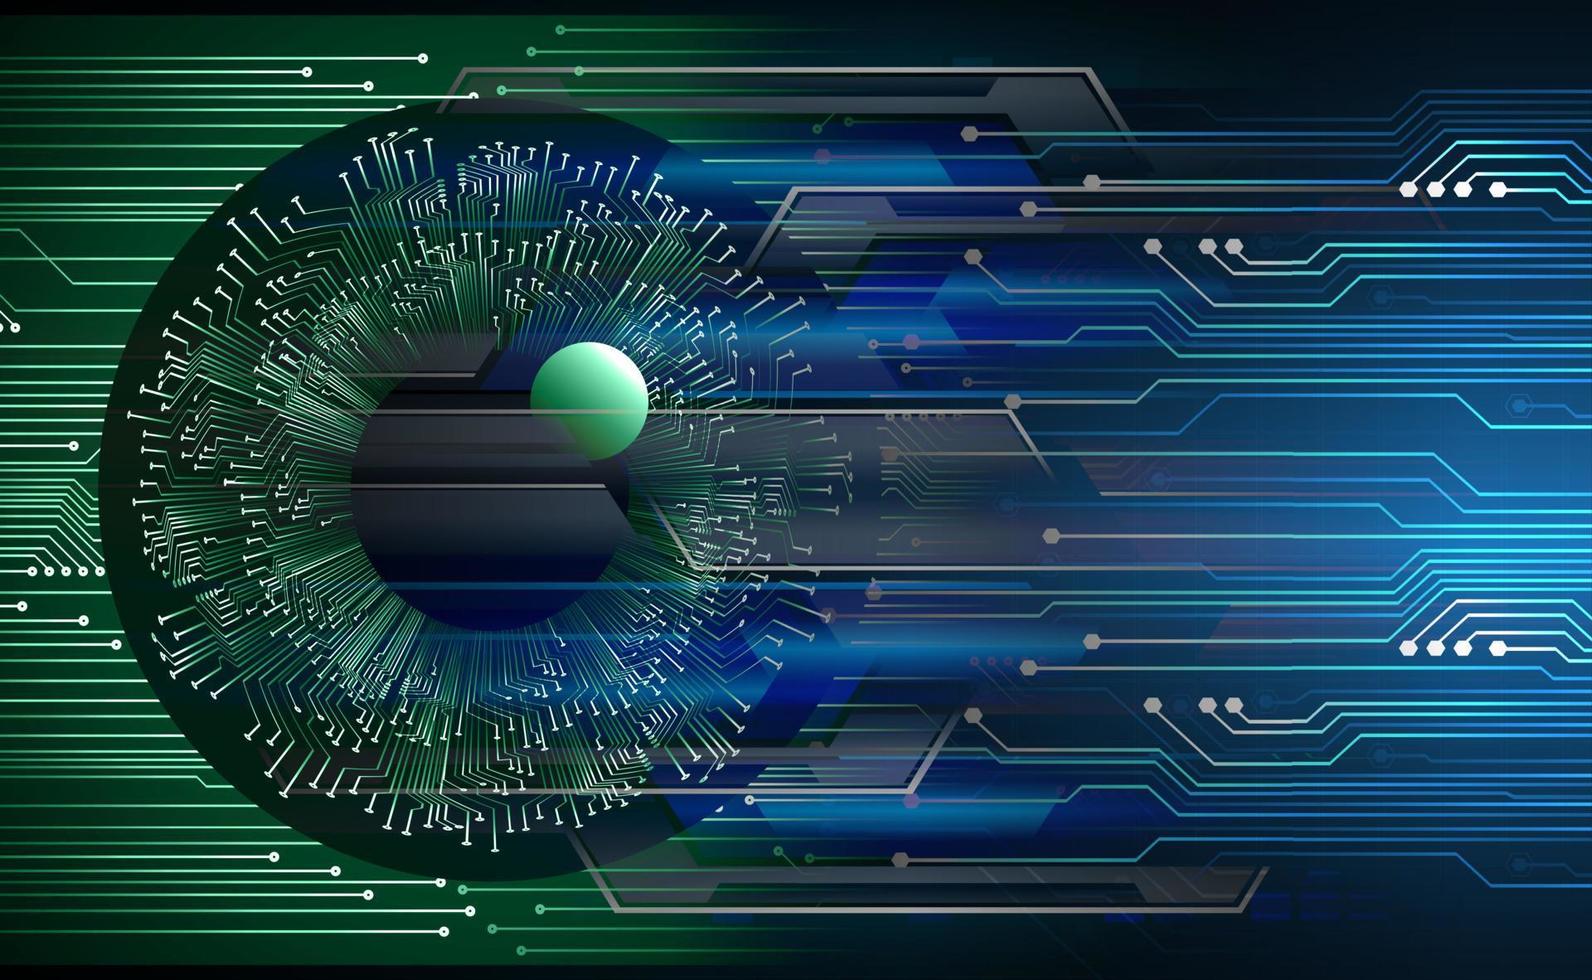 ögon cyber krets framtida teknik koncept bakgrund vektor